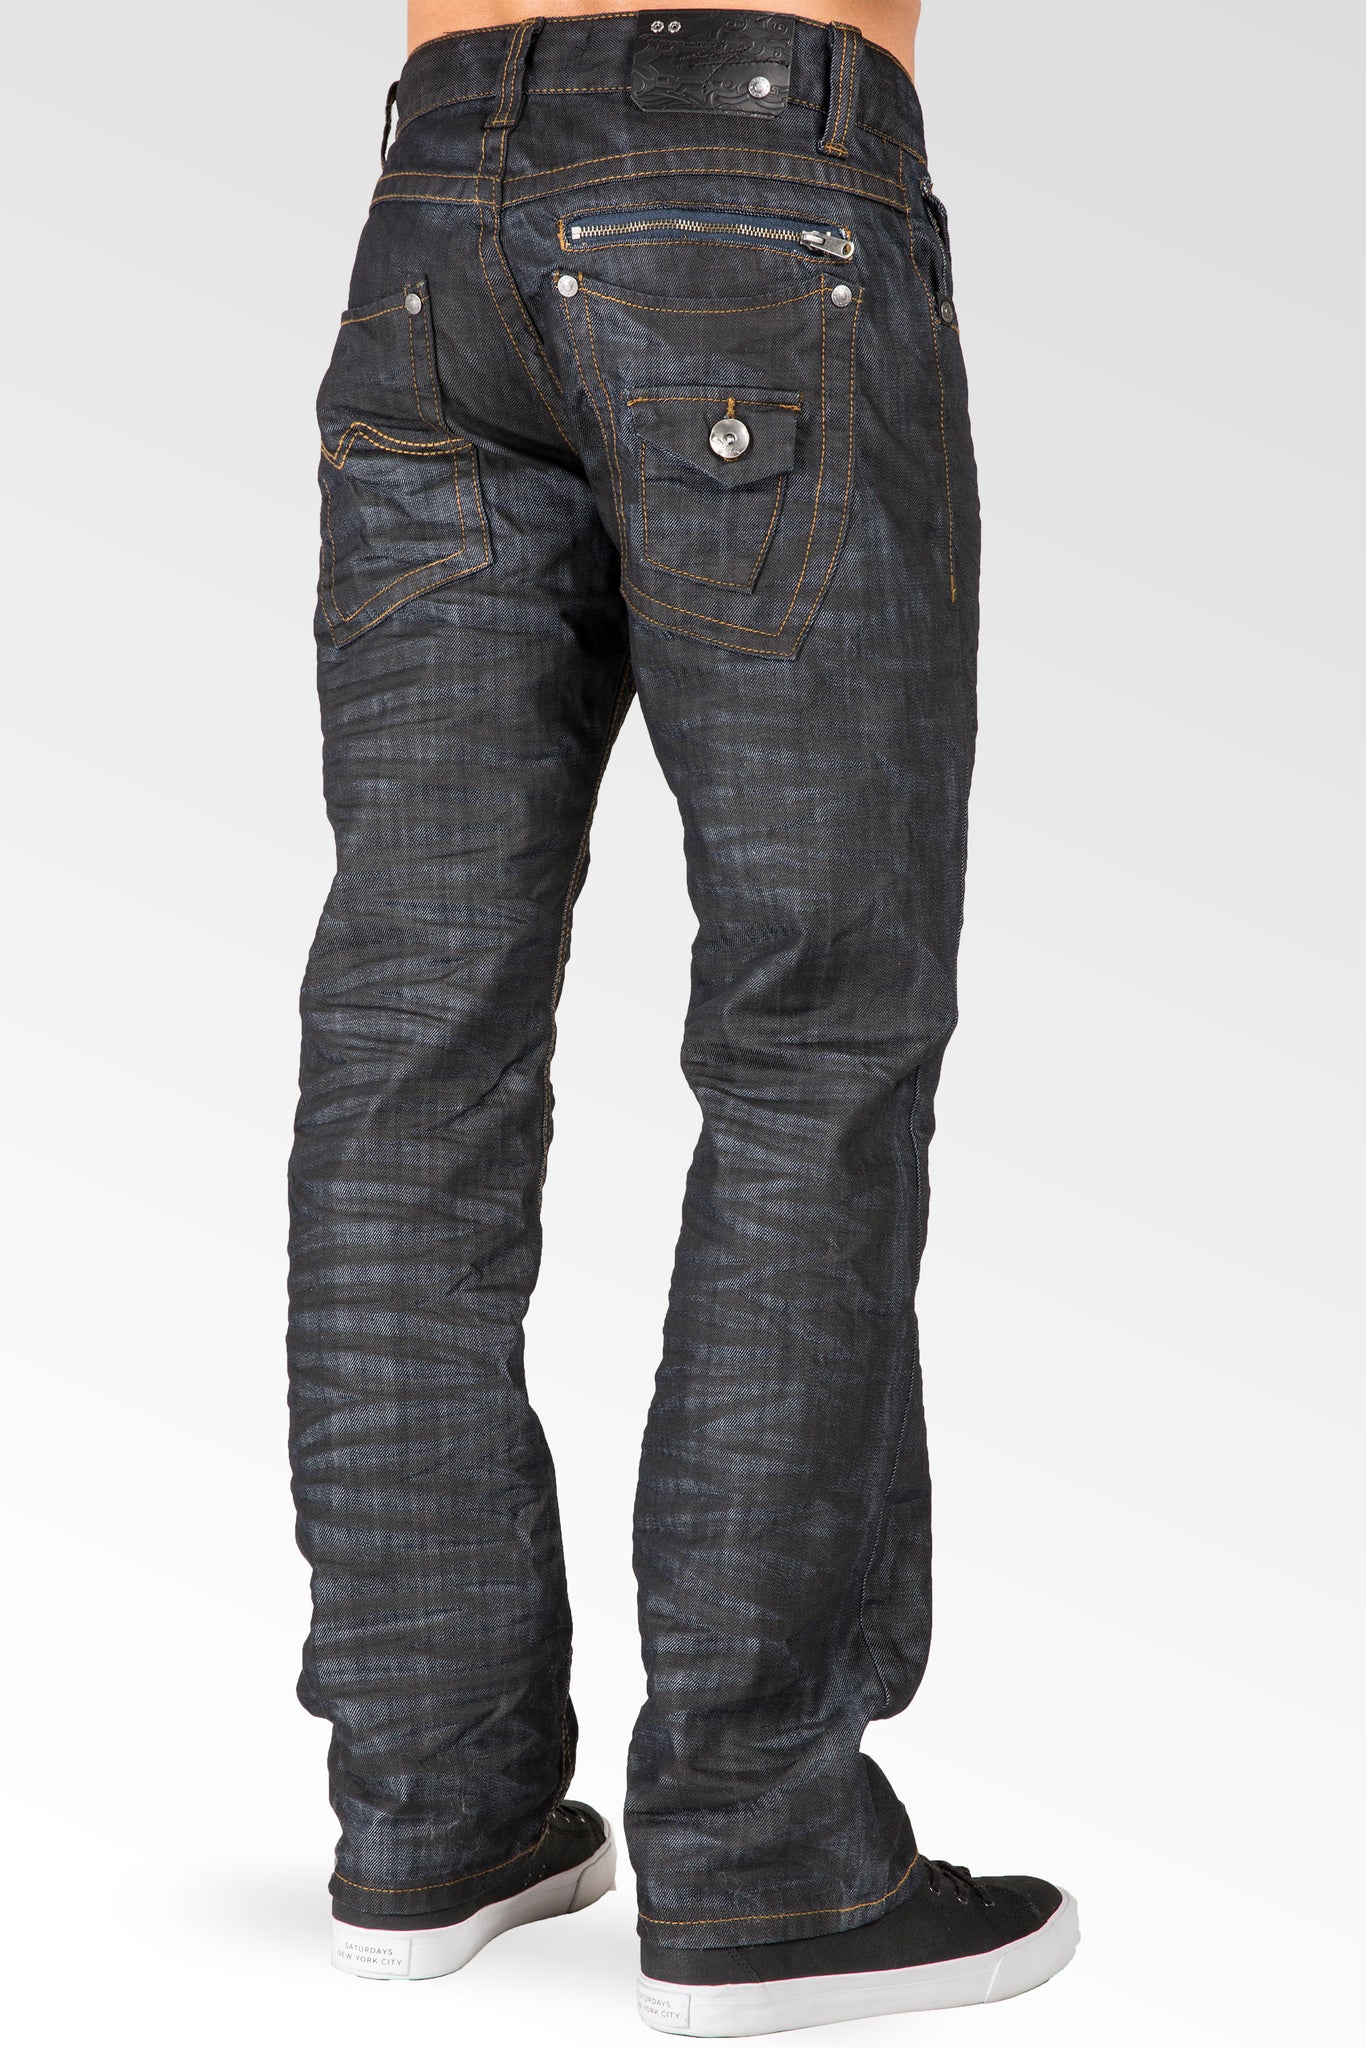 Midrise Relaxed Straight Leg Black Whisker Coating Premium Denim Jeans Zip Back pocket